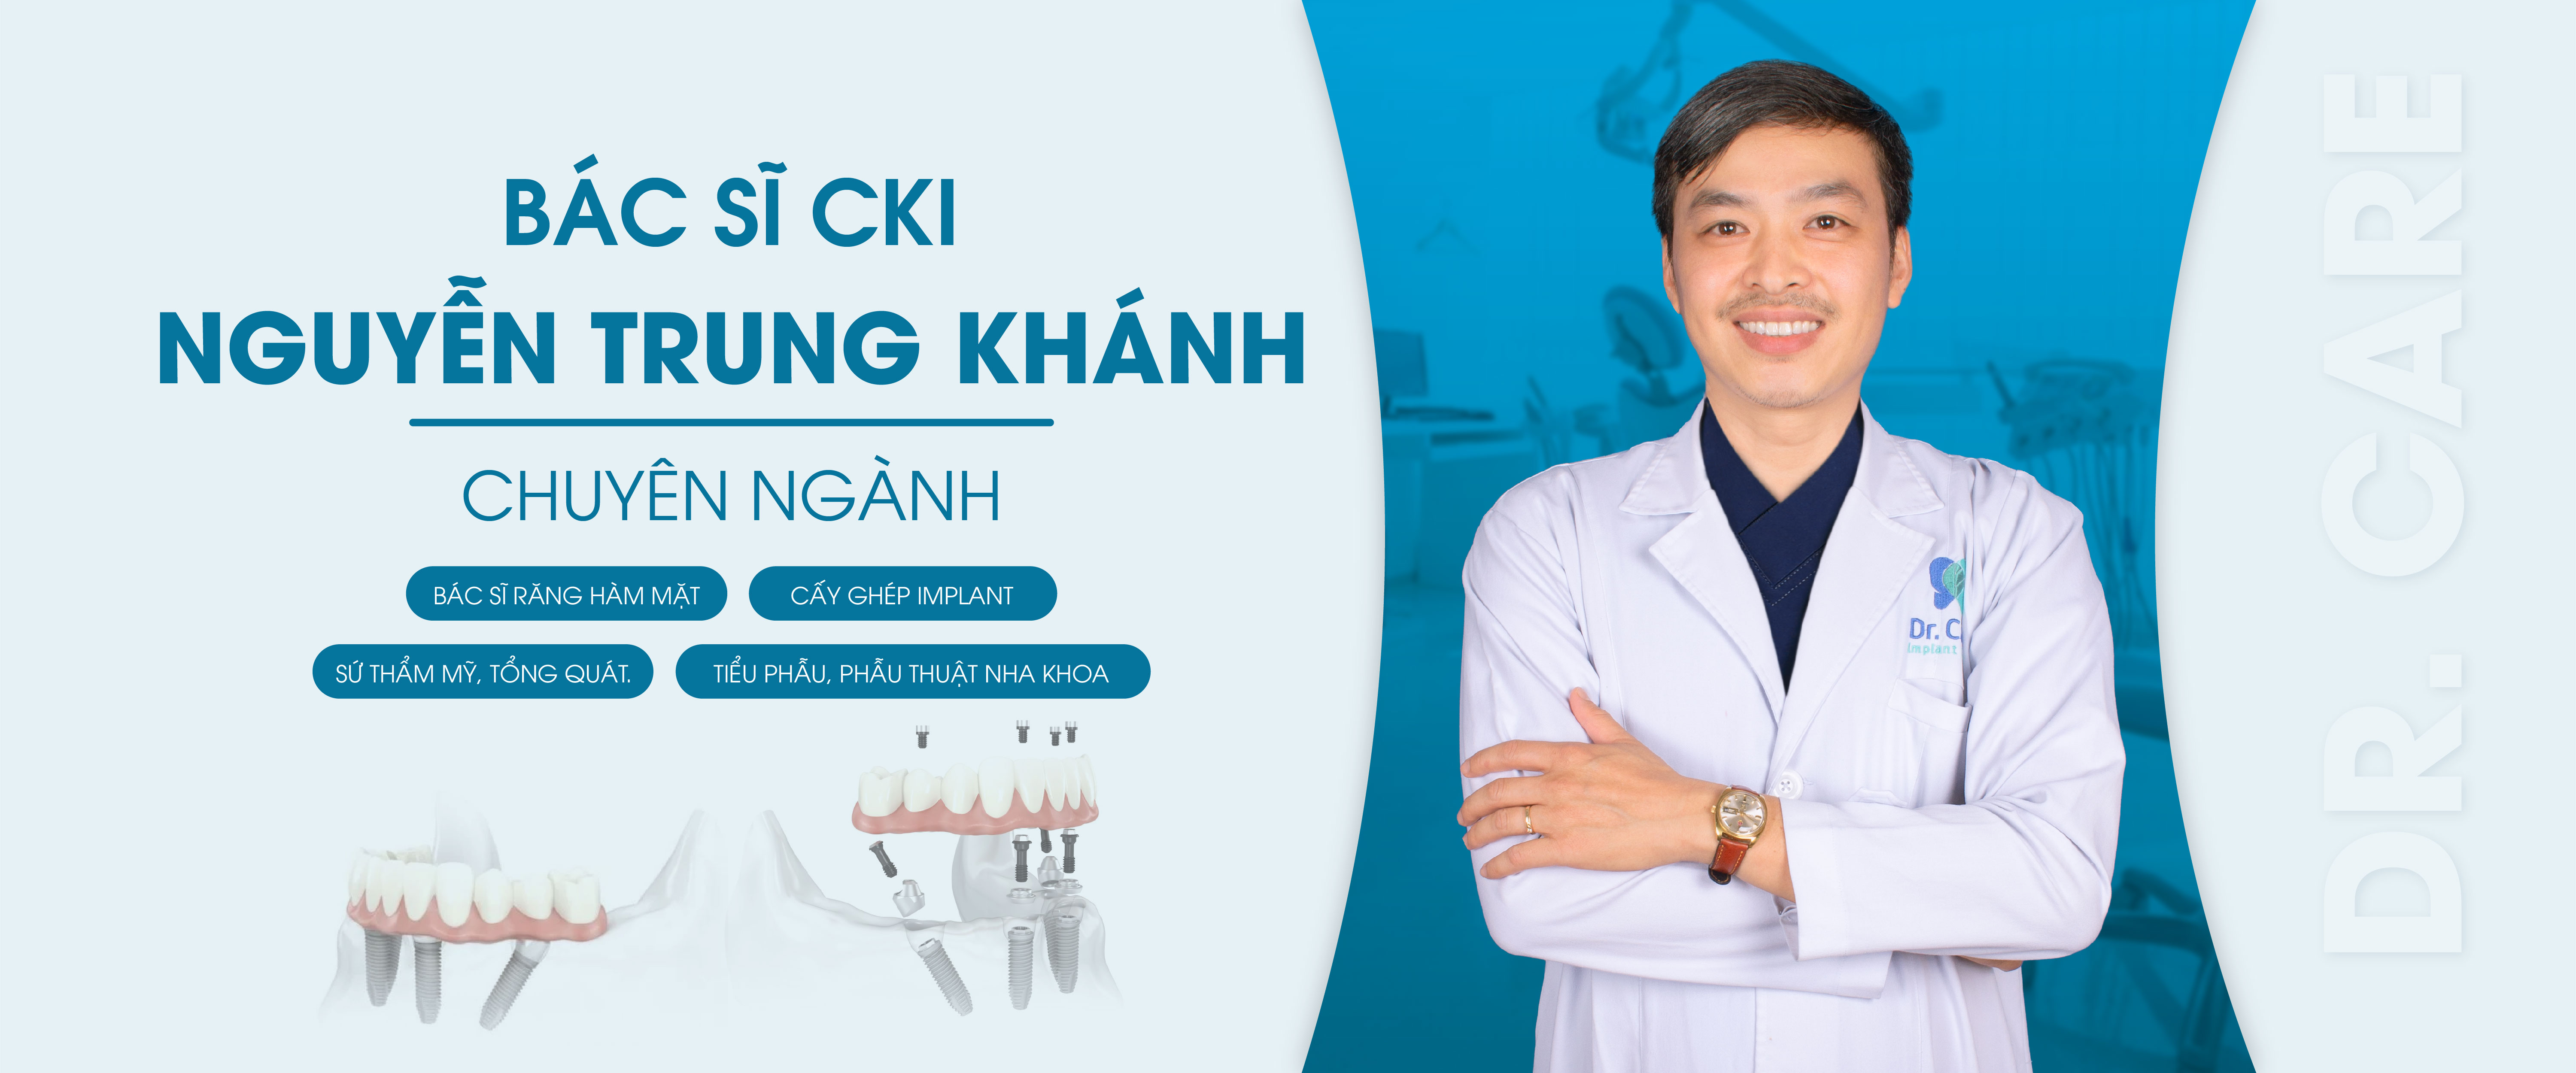 Bác sĩ Nguyễn Trung Khánh